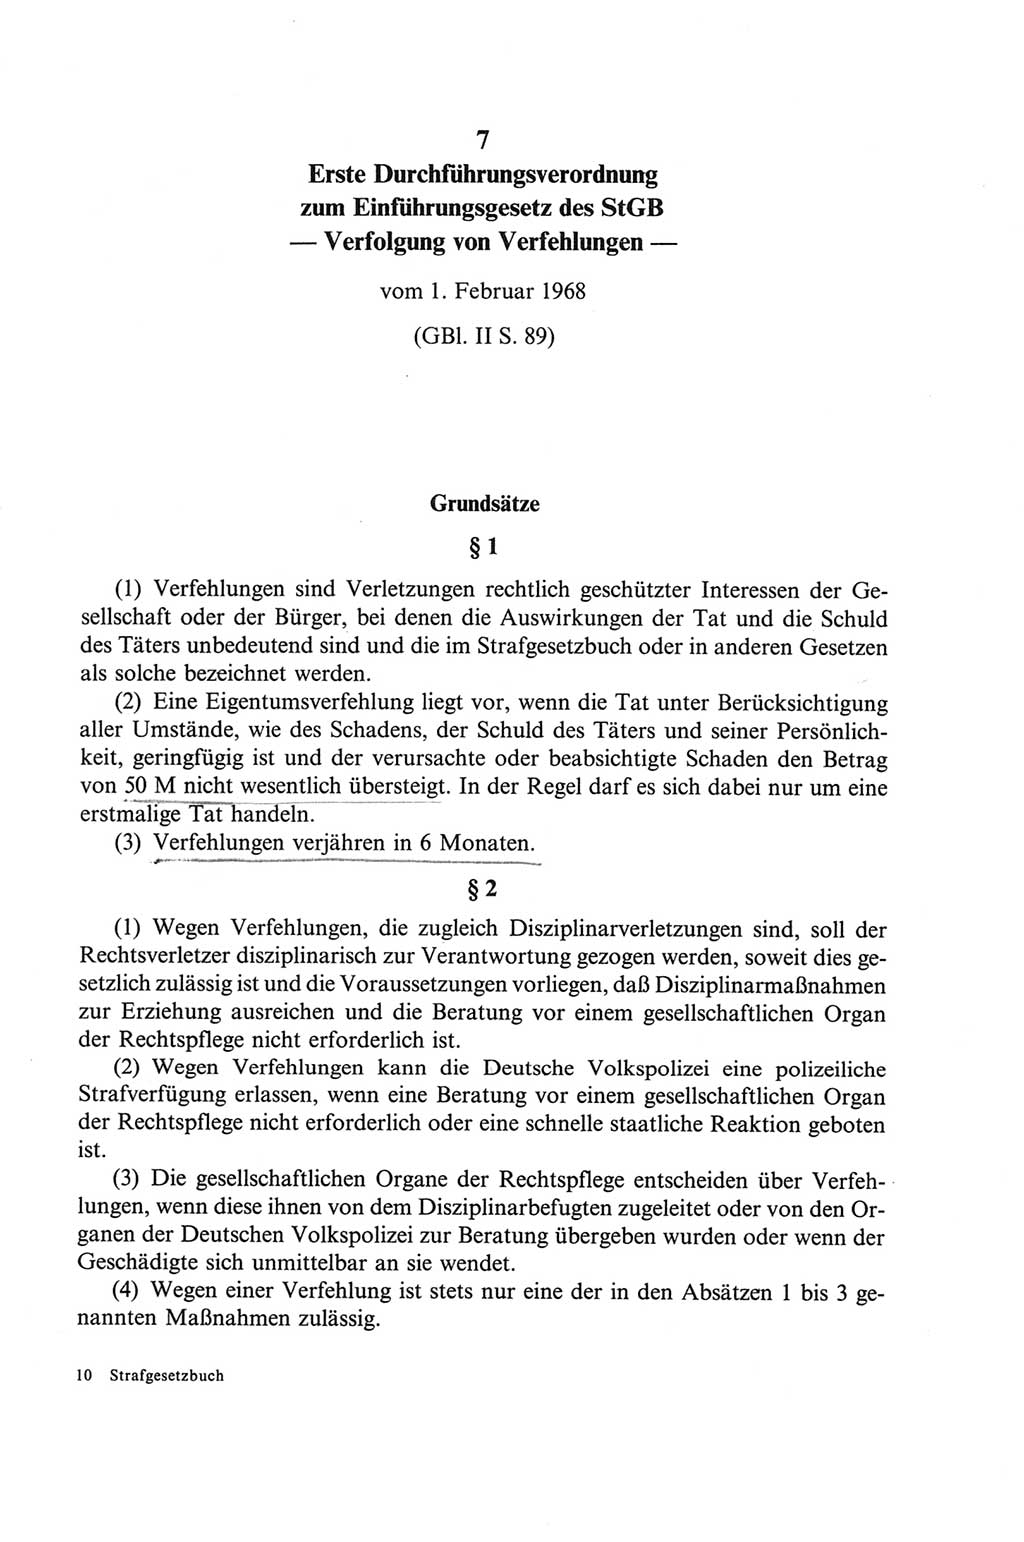 Strafgesetzbuch (StGB) der Deutschen Demokratischen Republik (DDR) und angrenzende Gesetze und Bestimmungen 1968, Seite 145 (StGB Ges. Best. DDR 1968, S. 145)